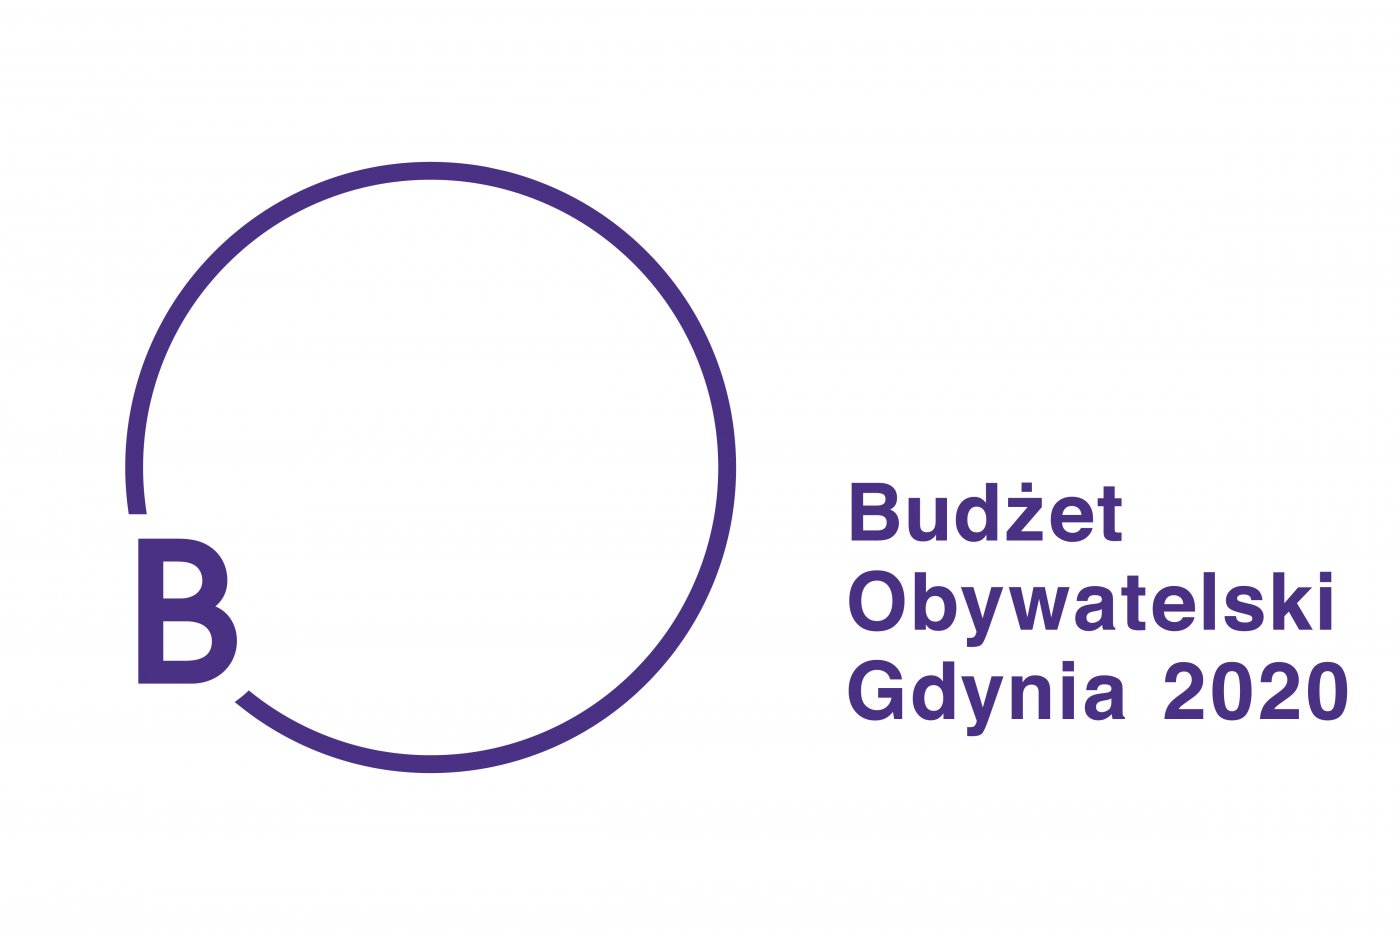 Projekty do Budżetu Obywatelskiego 2020 można składać od 27 stycznia do 24 lutego